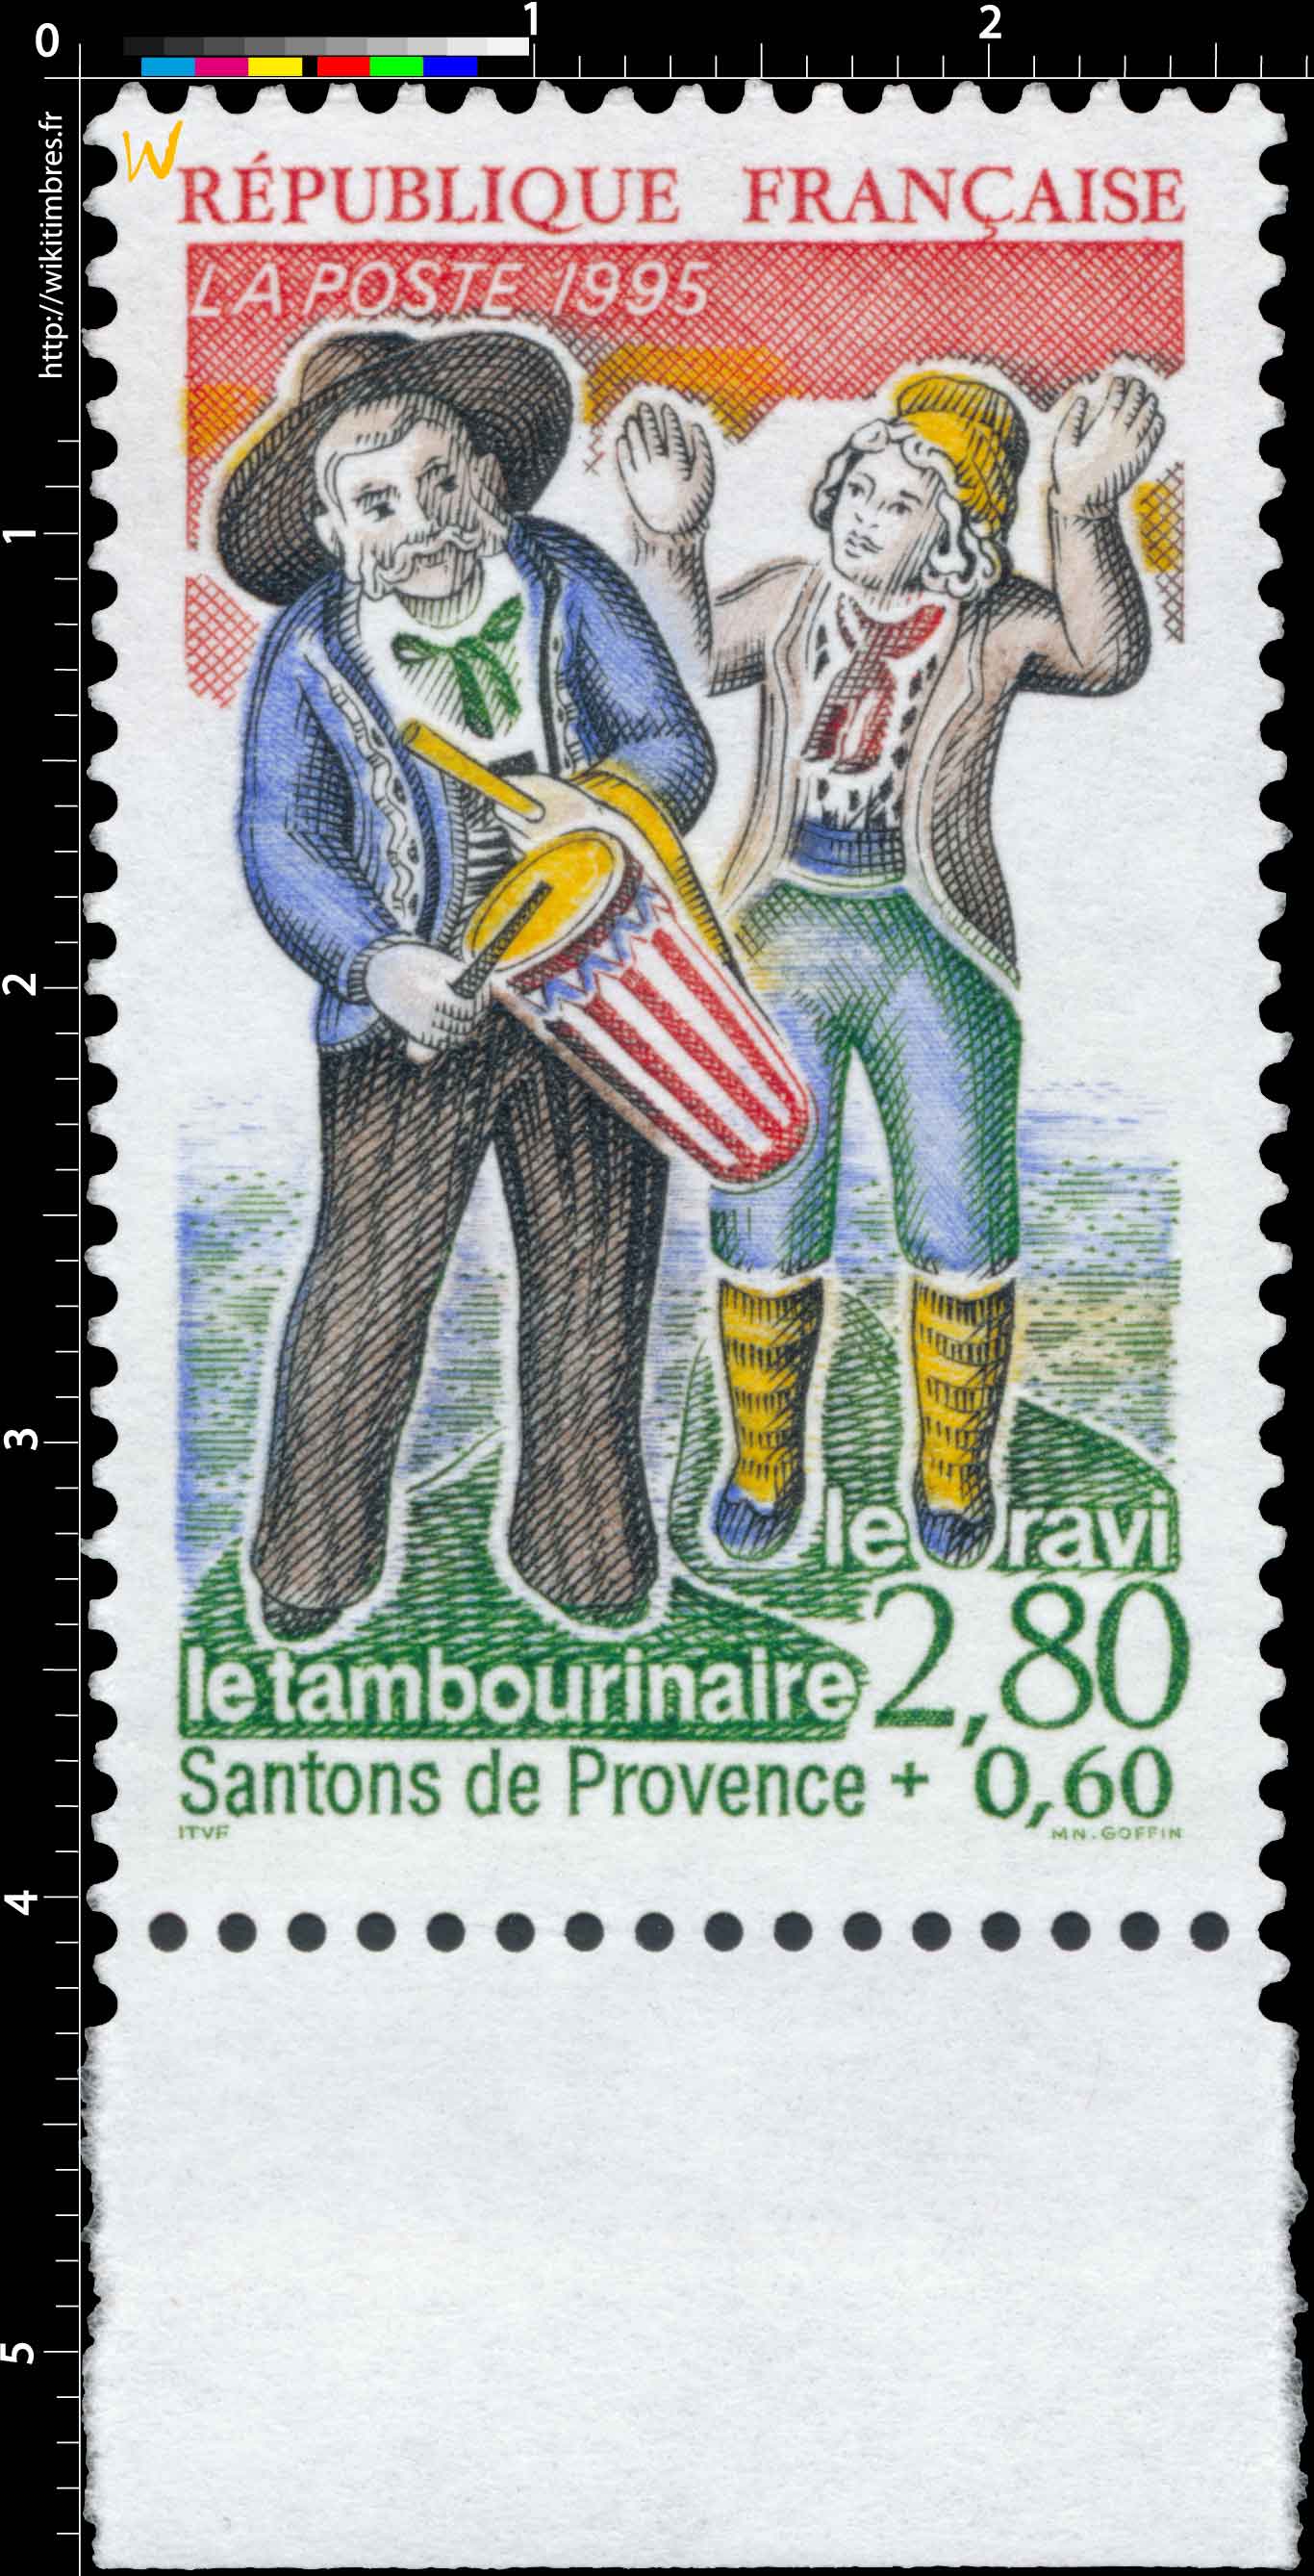 1995 Santons de Provence le ravi le tambourinaire